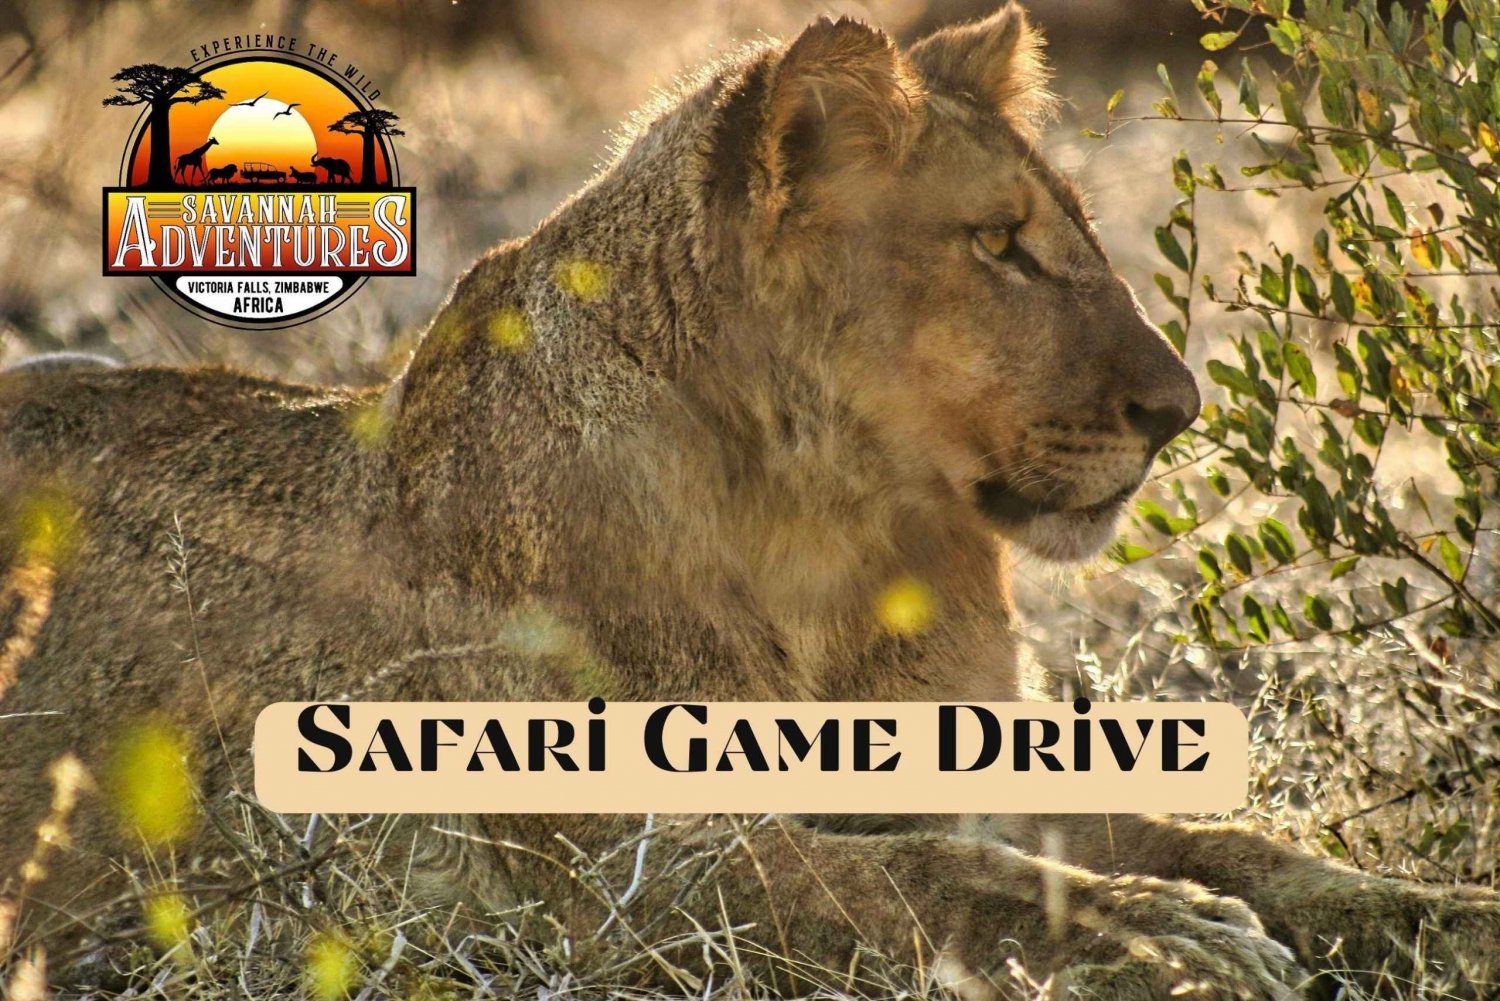 Victoria Falls: 4x4 Safari Game Drive Vic Falls